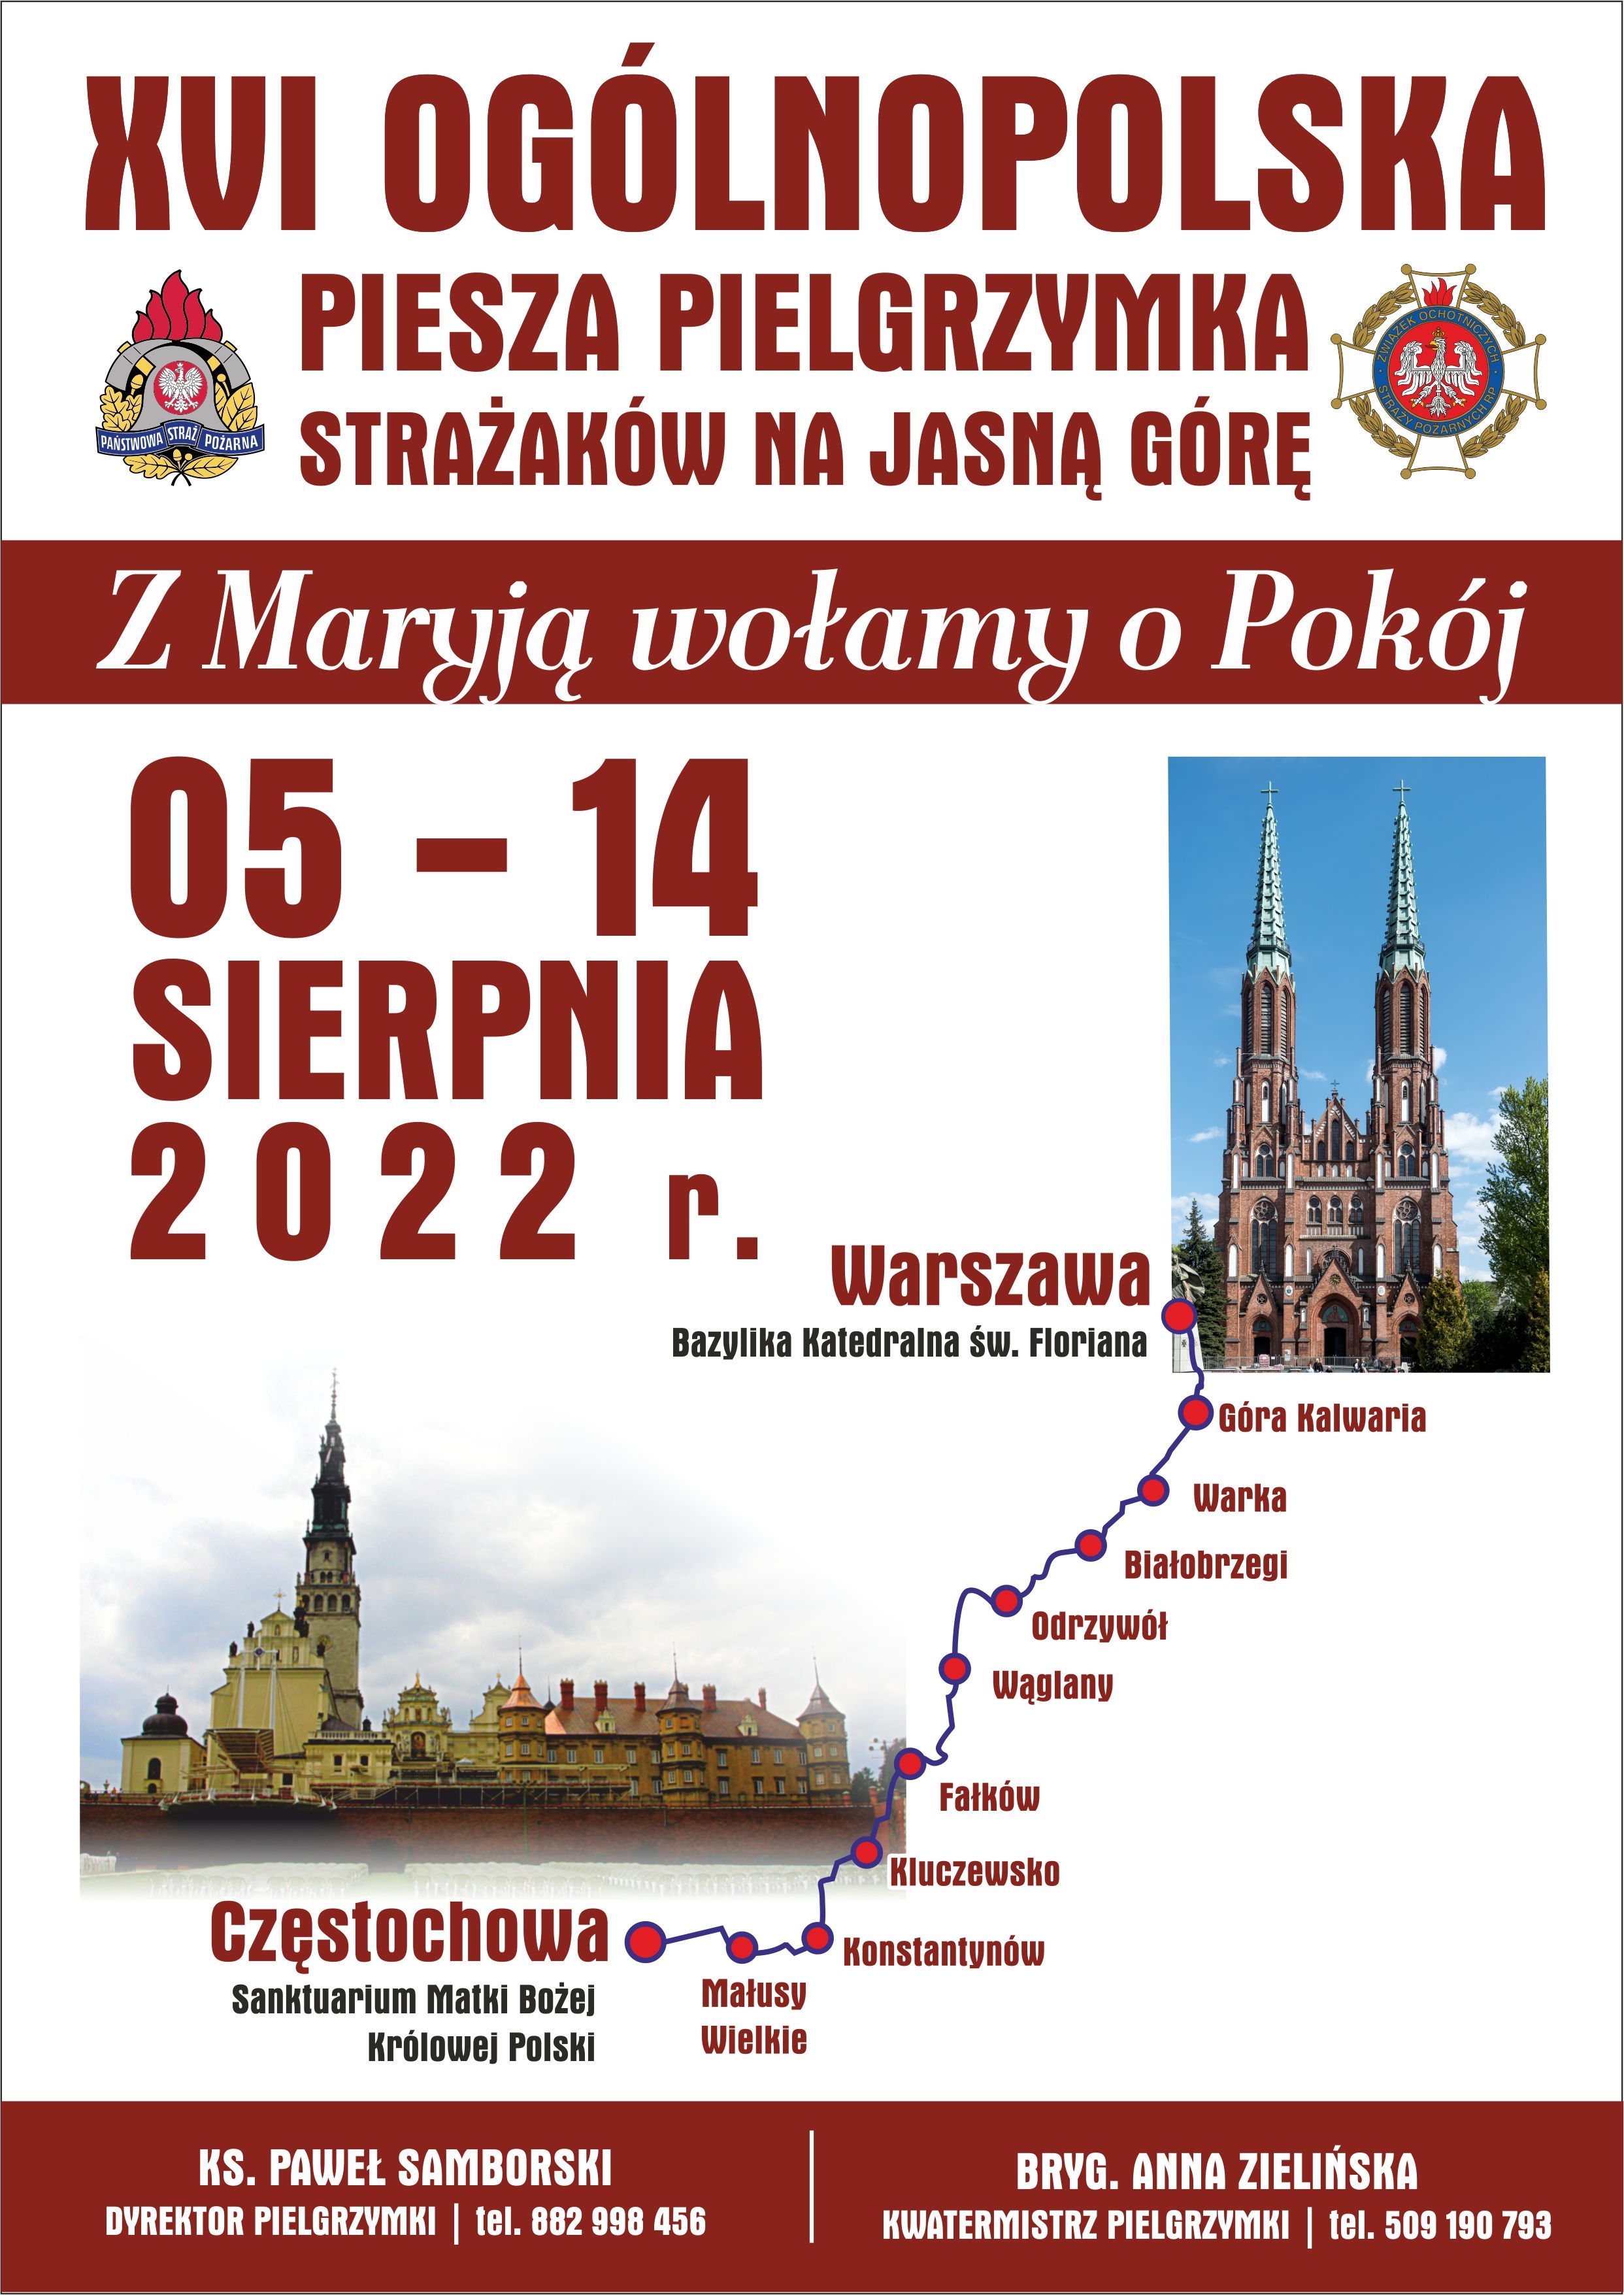 plakat XVI Ogólnopolska Piesza Pielgrzymka Strażaków na Jasną Górę